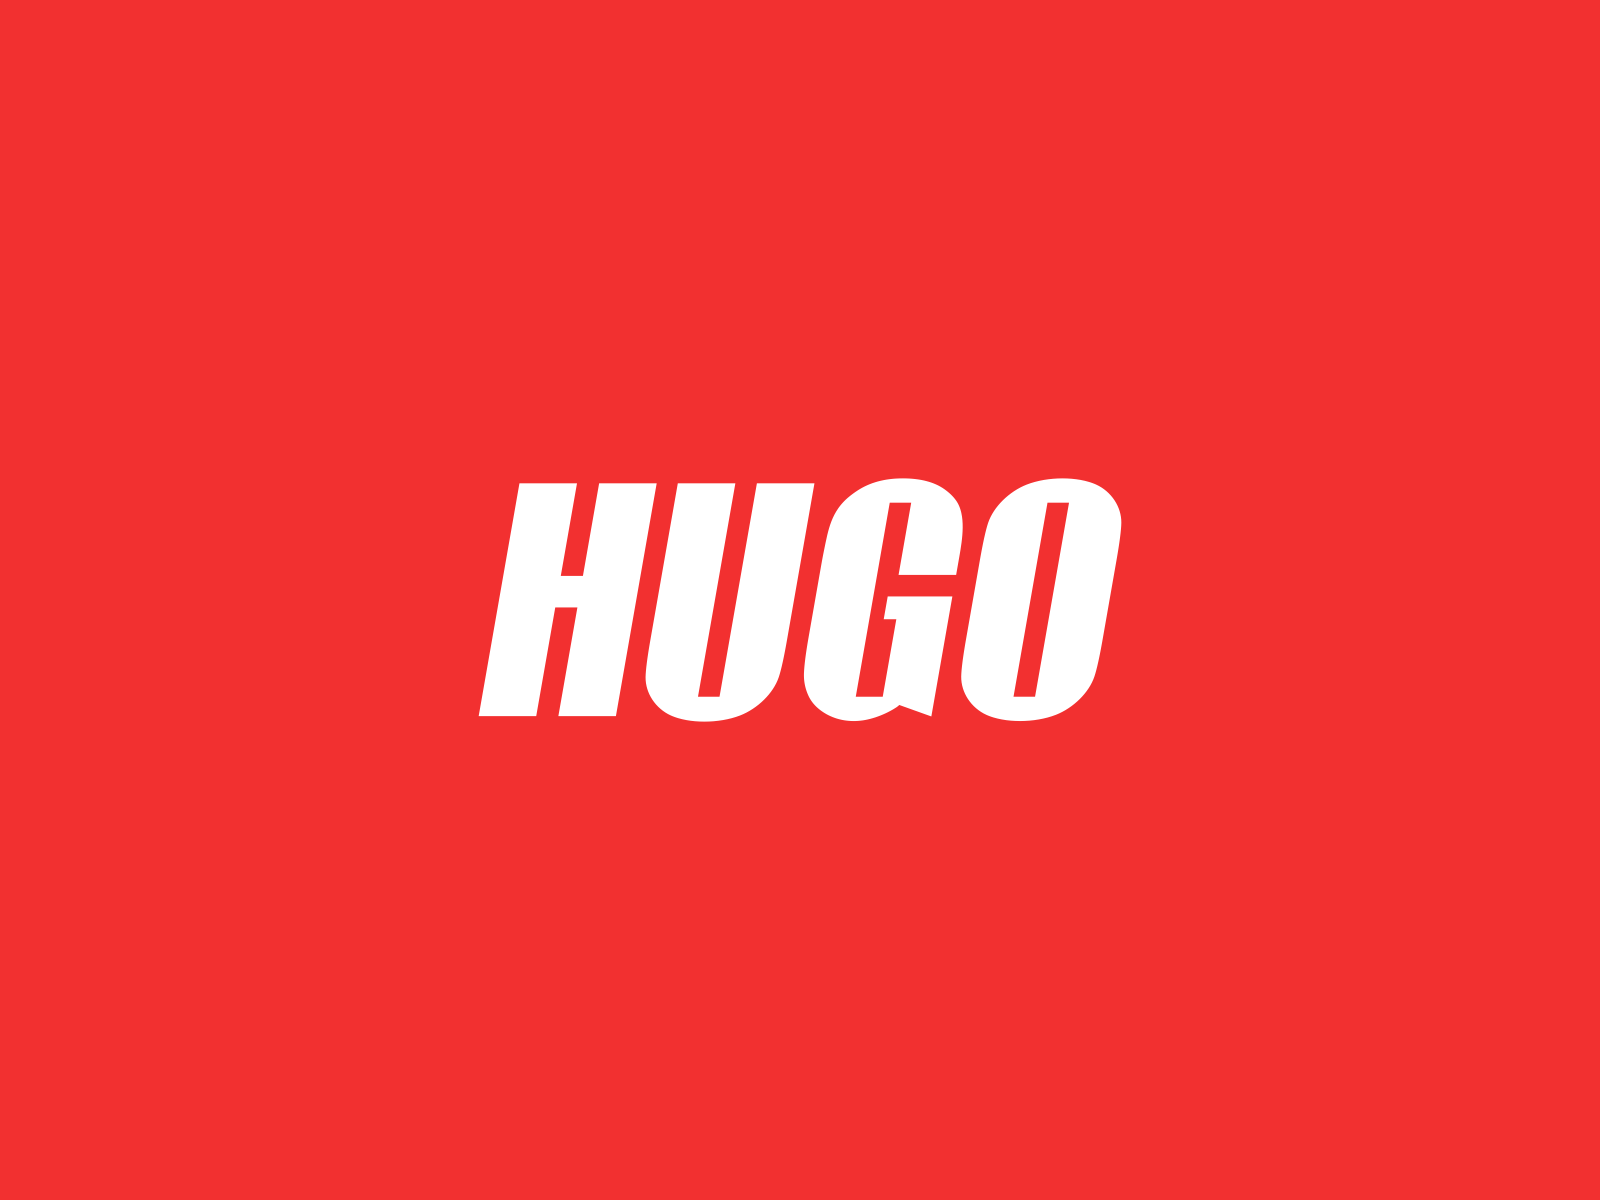 HUGO by Anastasia Kurilenko on Dribbble